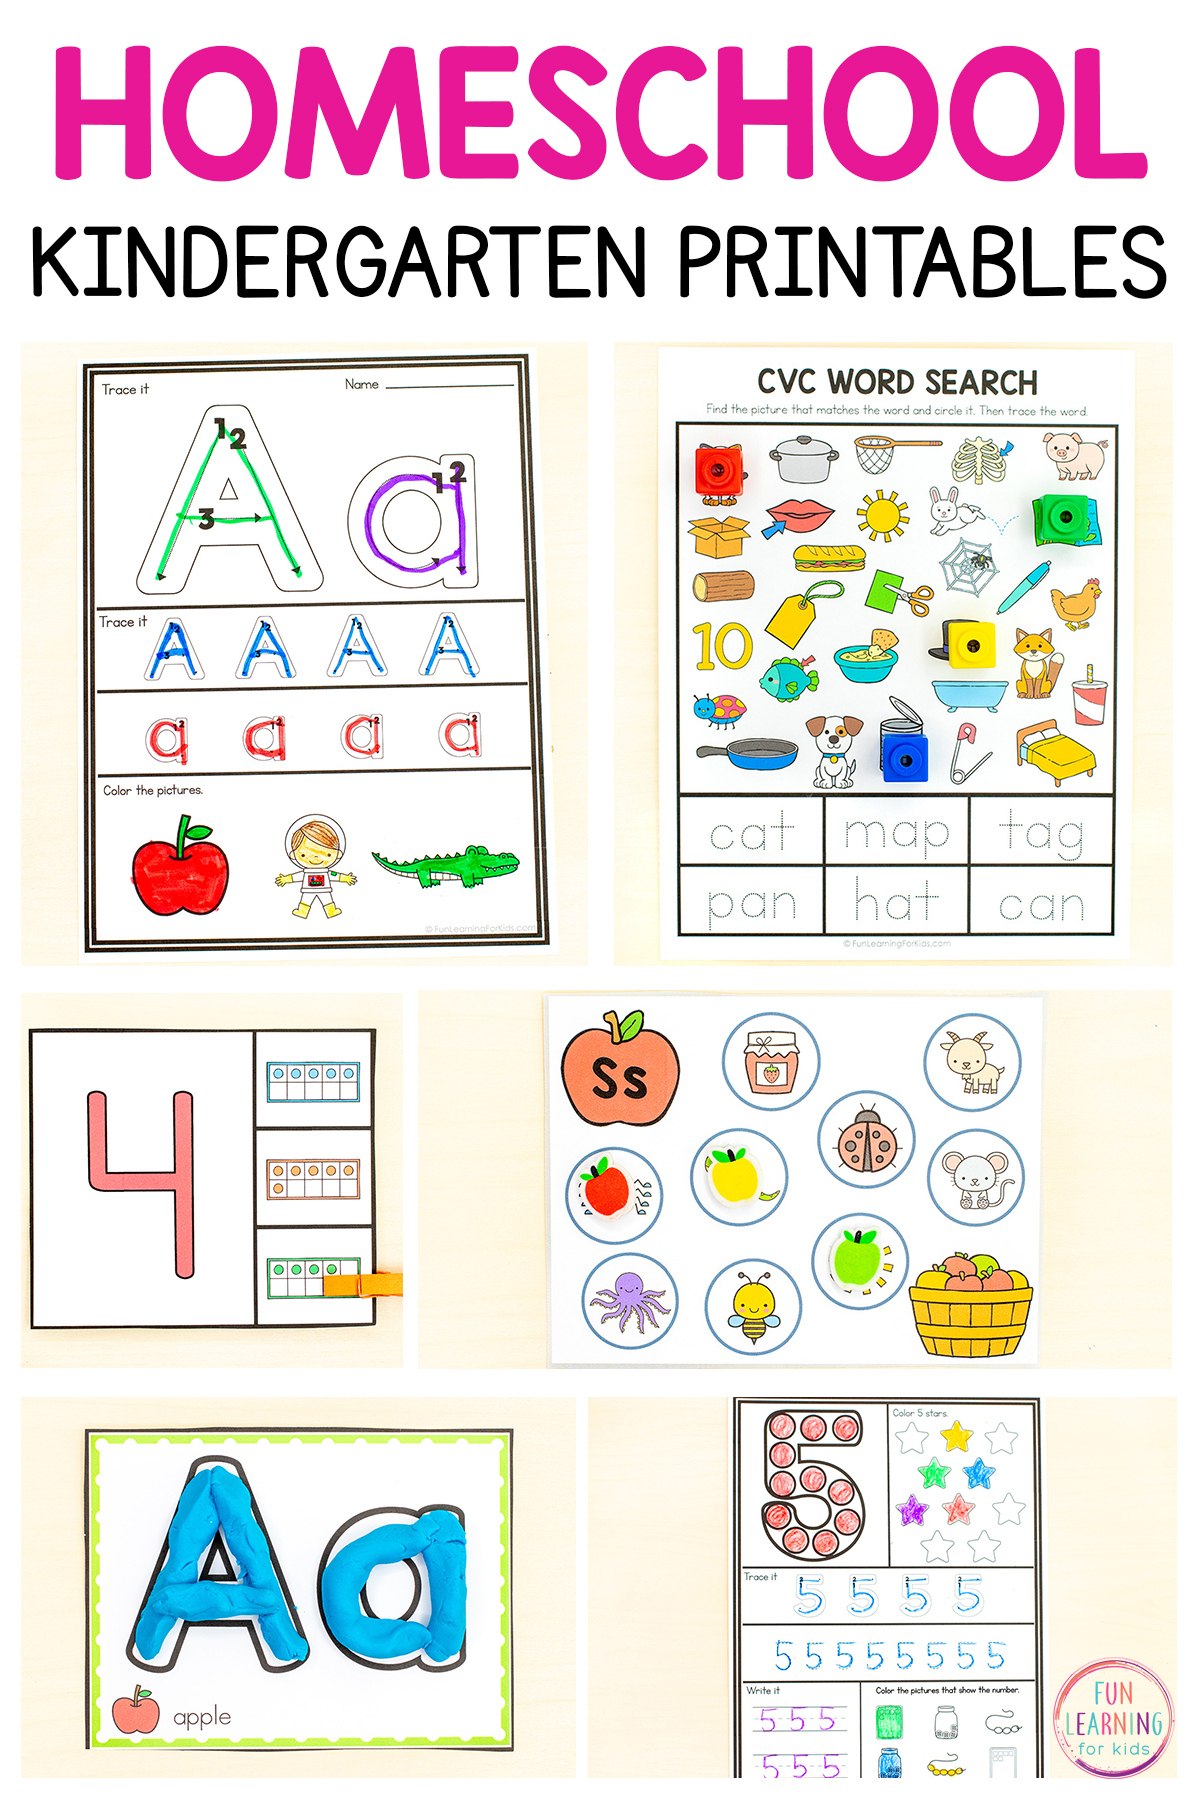 Homeschool Printables For Kindergarten throughout Free Homeschool Printable Worksheets